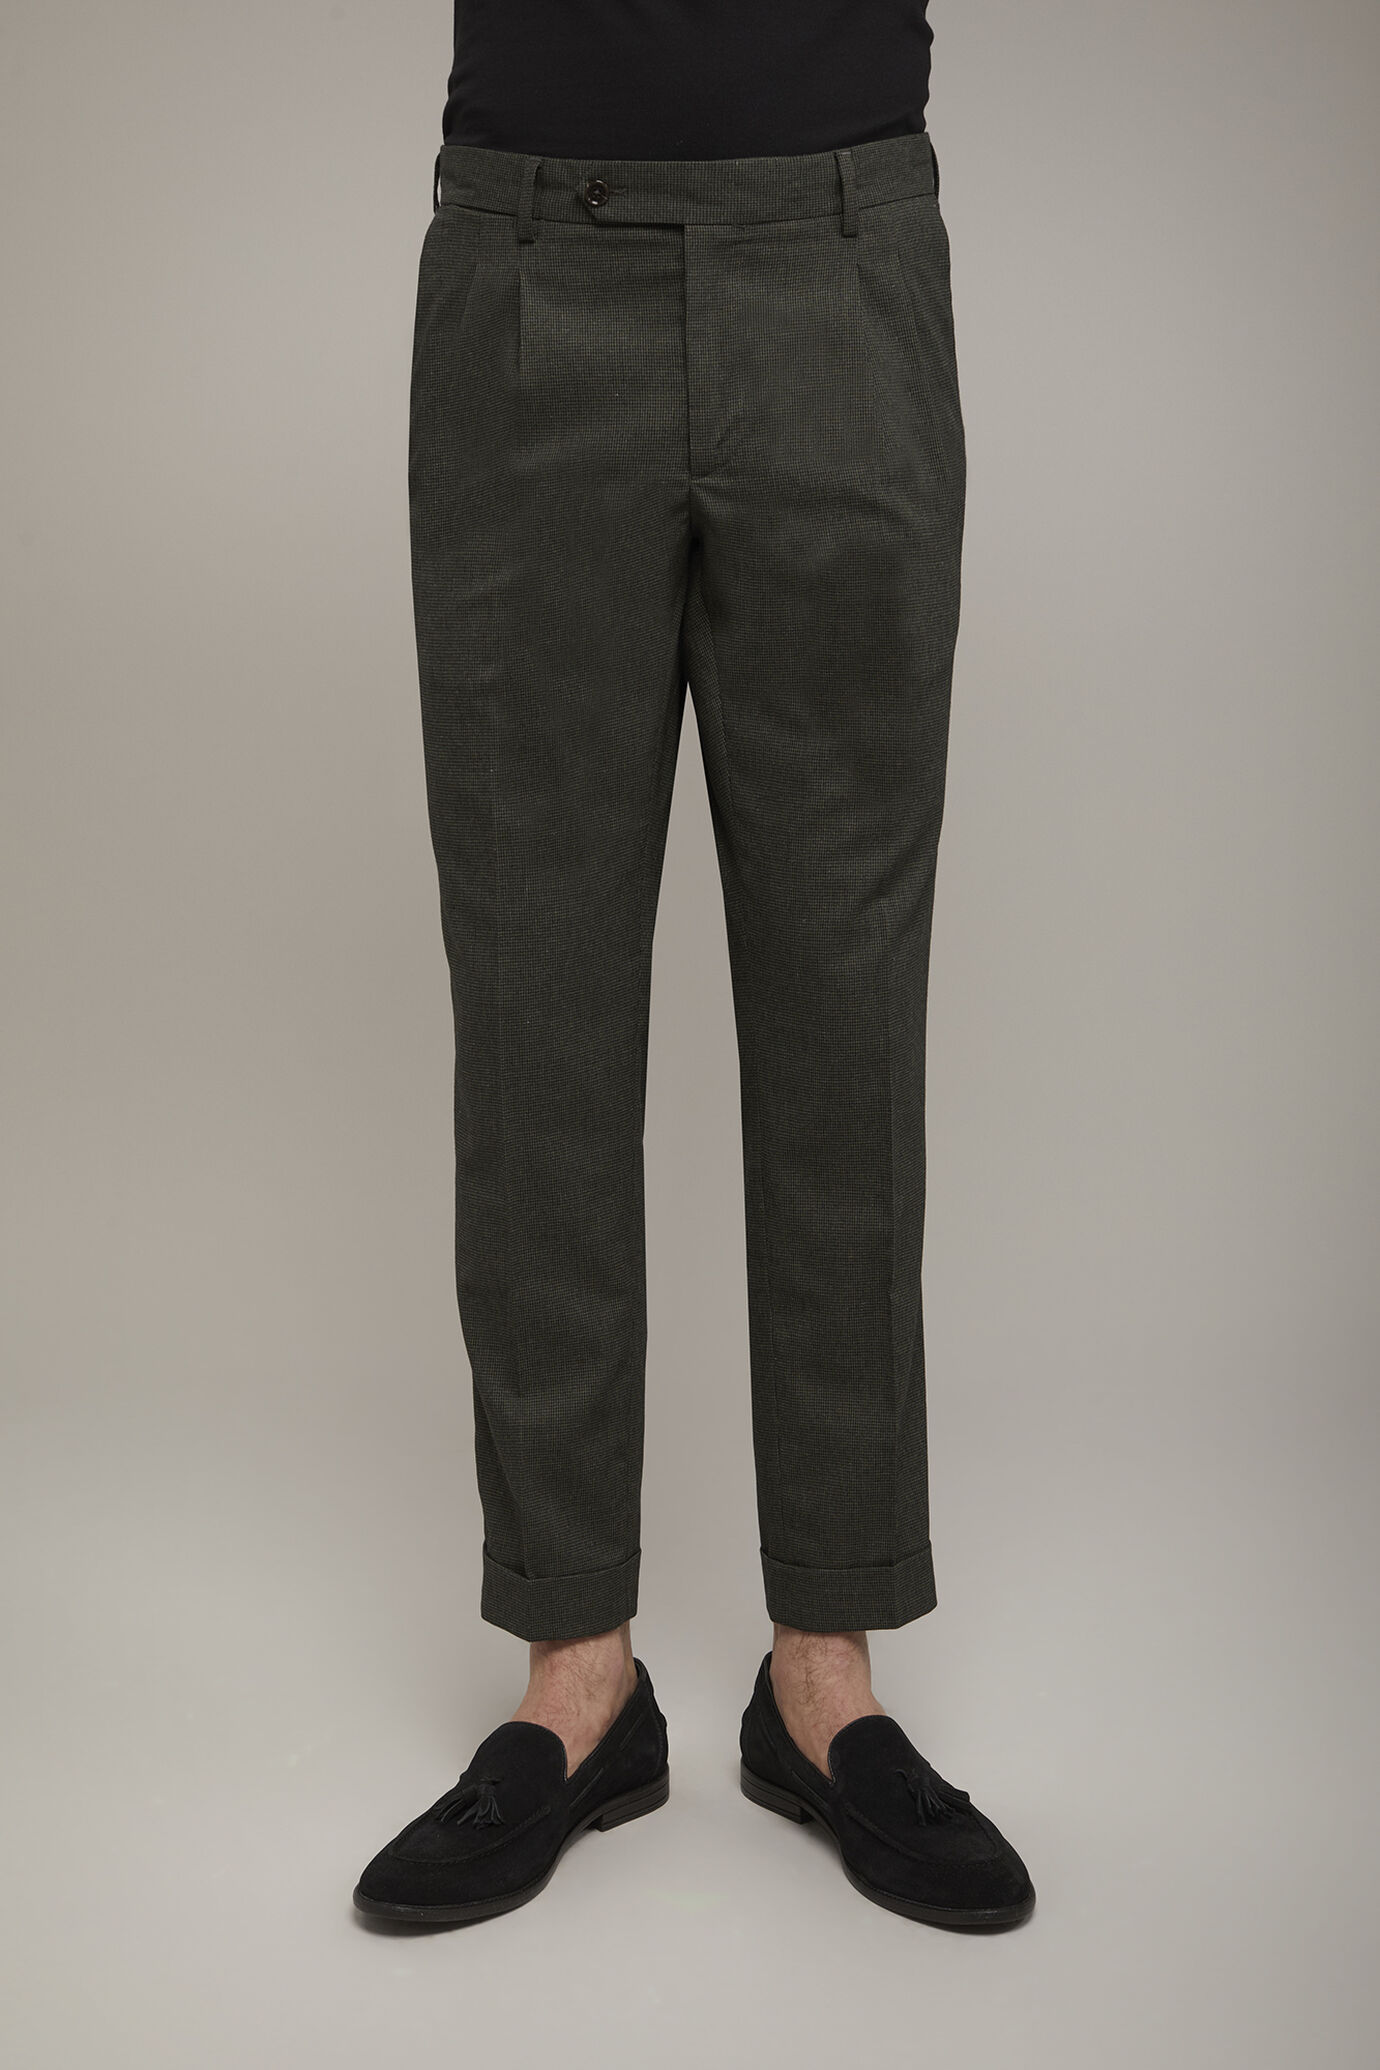 Pantalon homme classique à double pince, tissu avec motif micro pied-de-poule coupe régulière image number 3